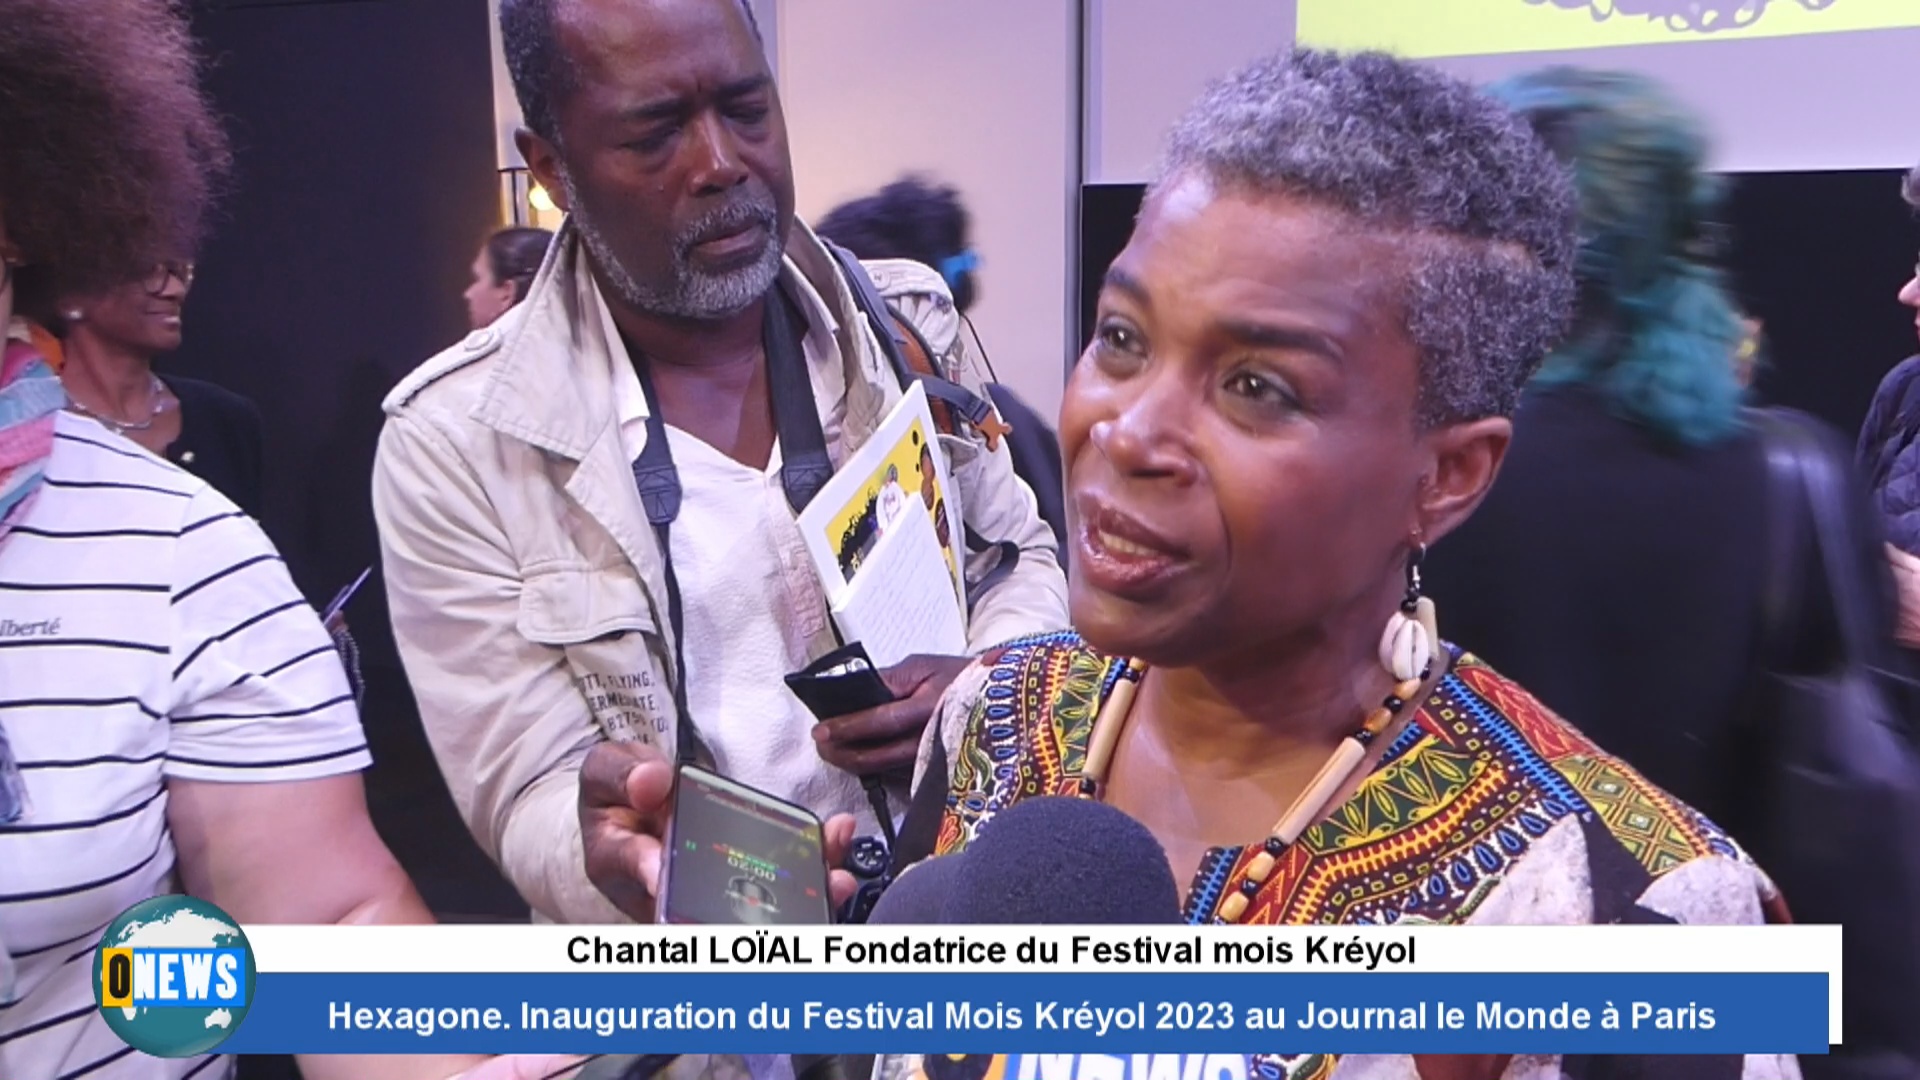 [Vidéo] Hexagone. Inauguration du Festival Mois Kréyol 2023 au Journal le Monde à Paris